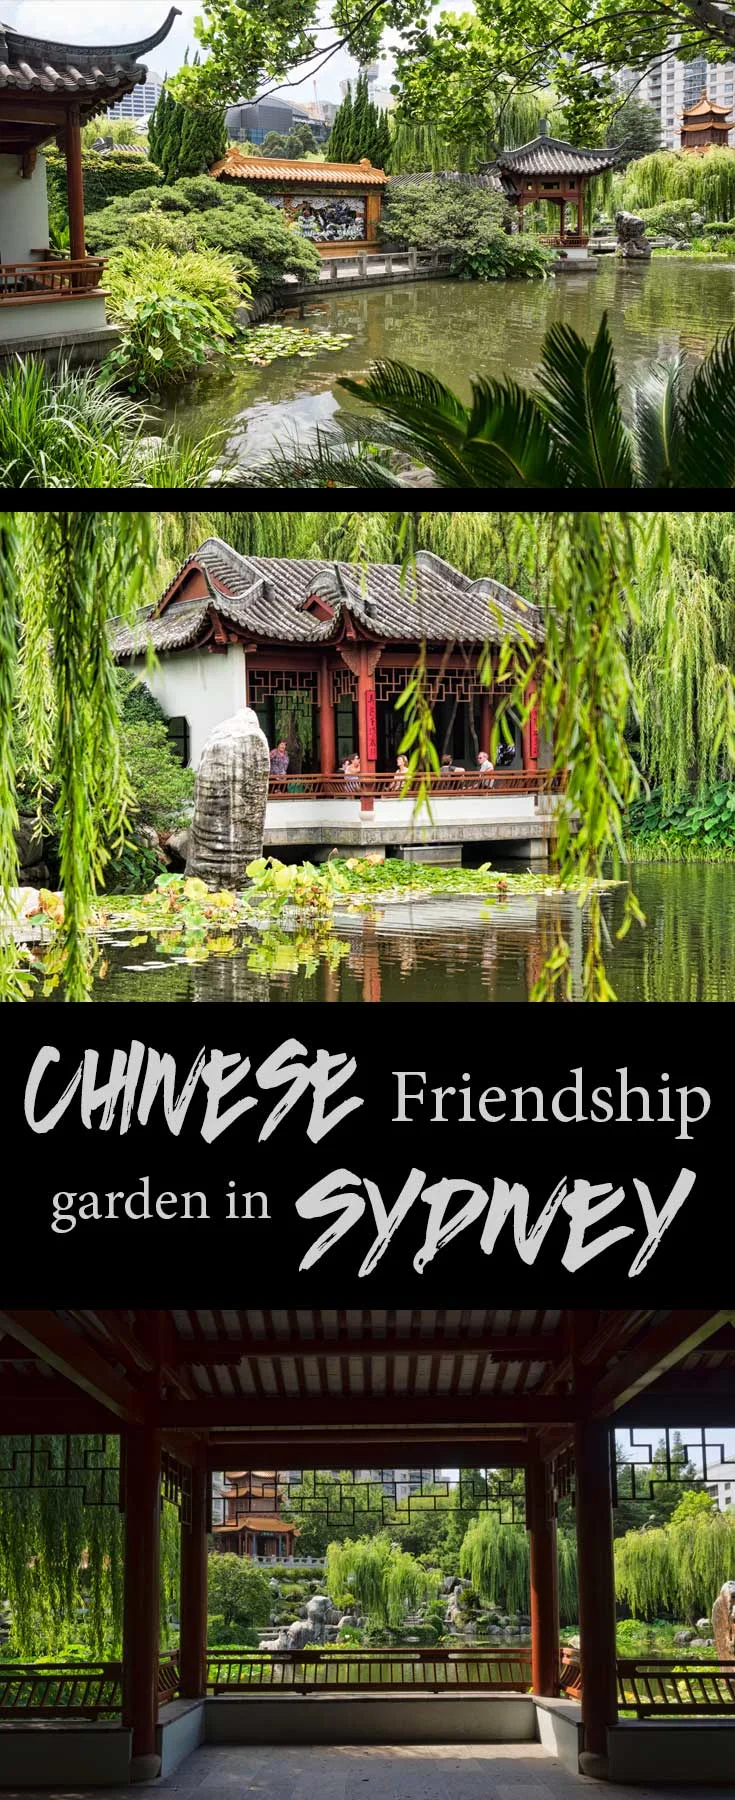 Chinese friendship garden in Sydney